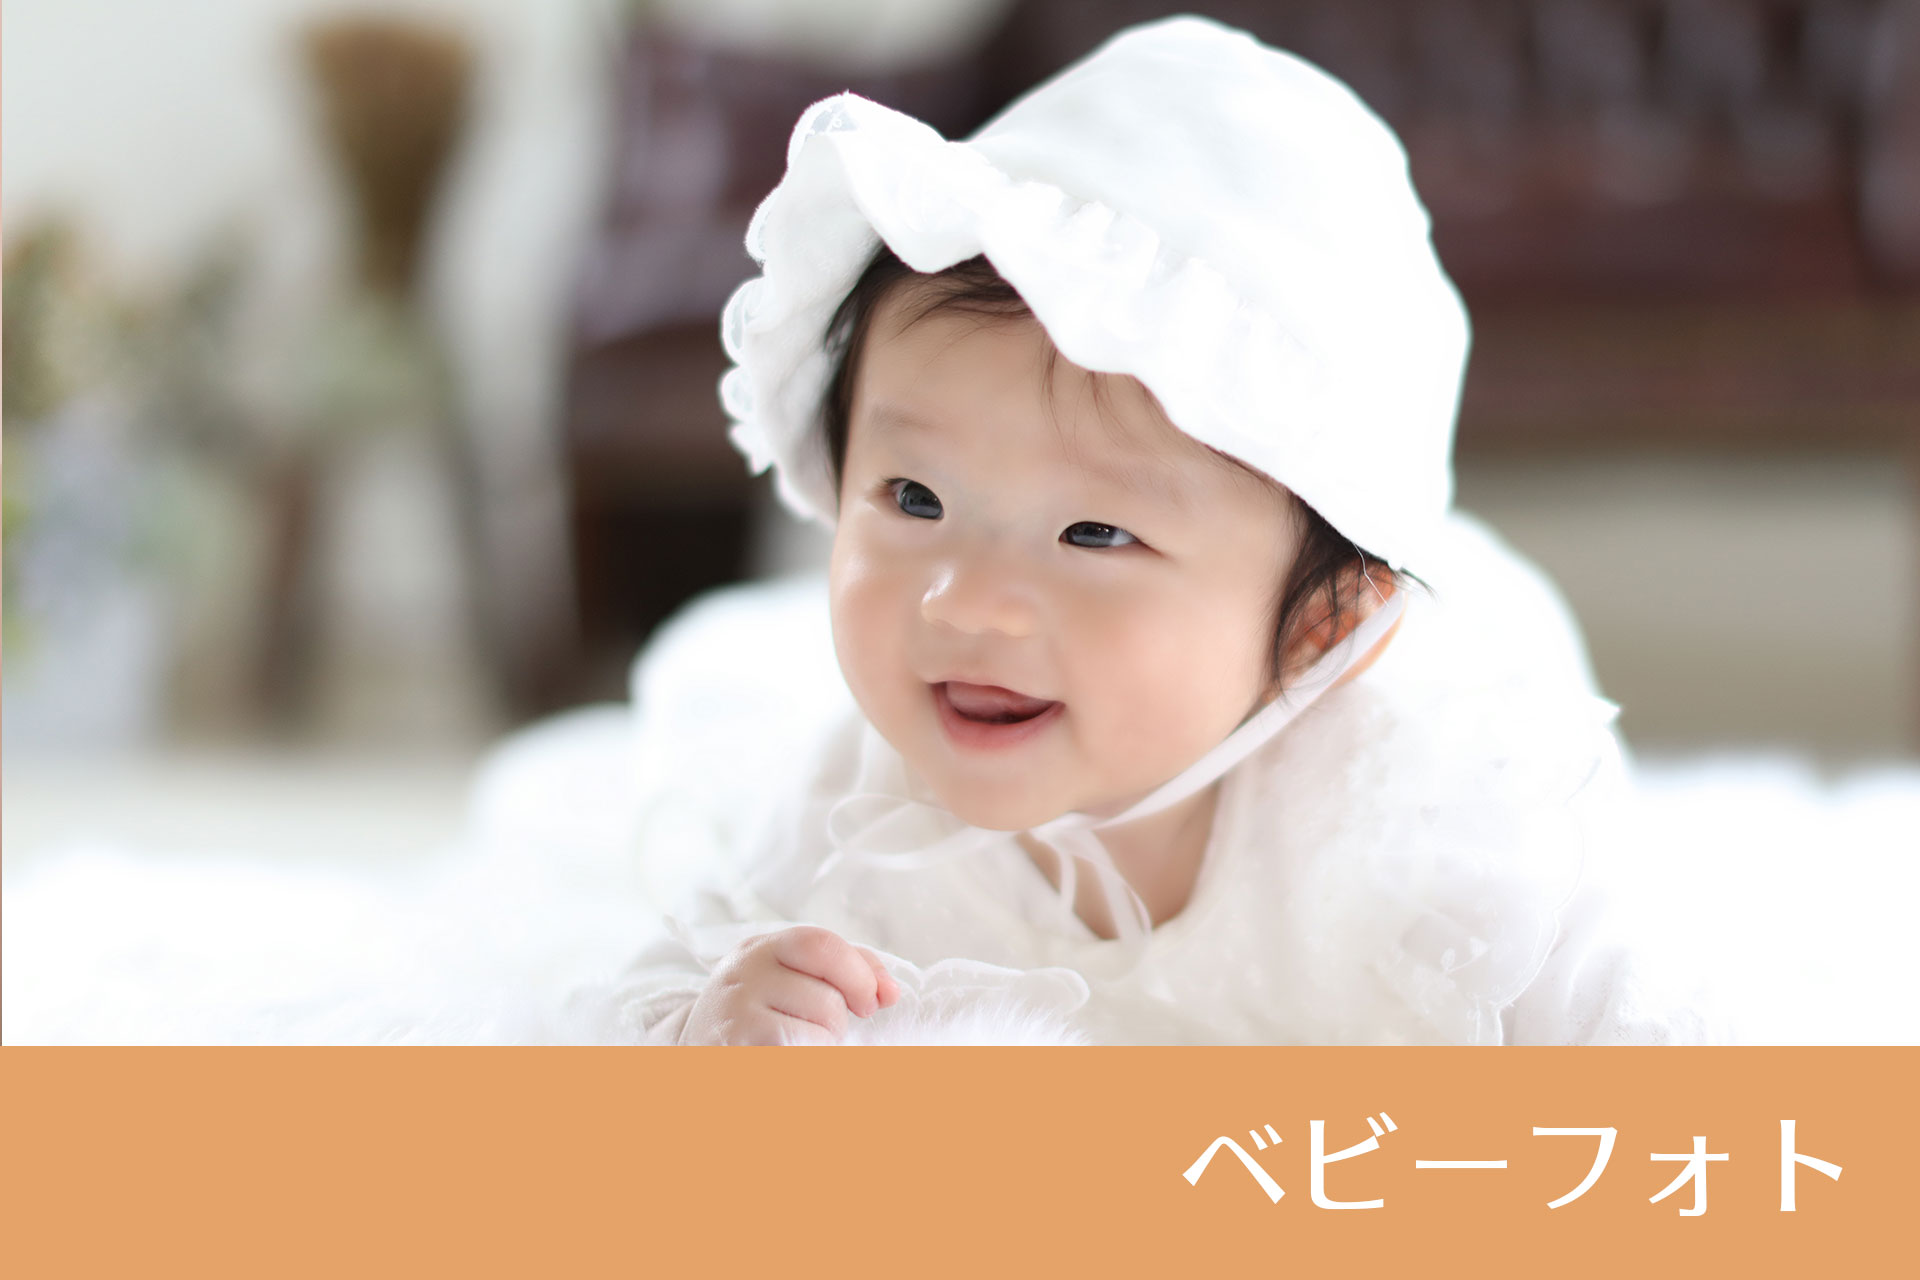 赤ちゃんの自然な表情を残すベイビーフォト 仙台愛子 陸前落合写真スタジオ スマイリングスタジオ